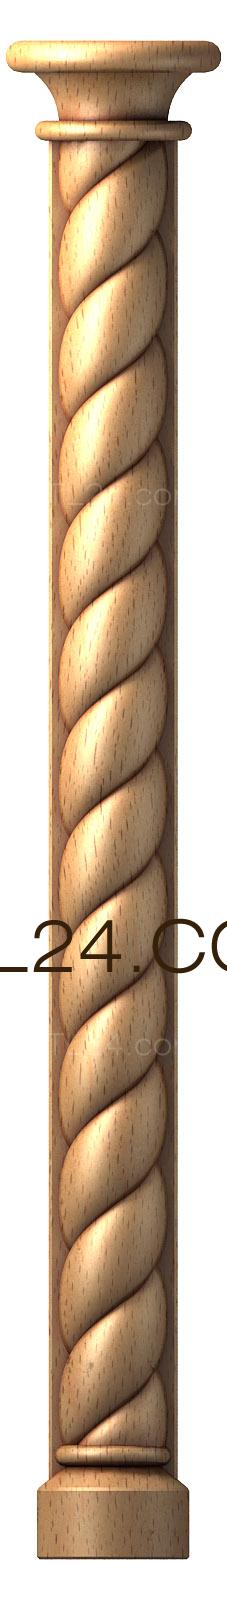 Church pillar (SC_0050) 3D models for cnc